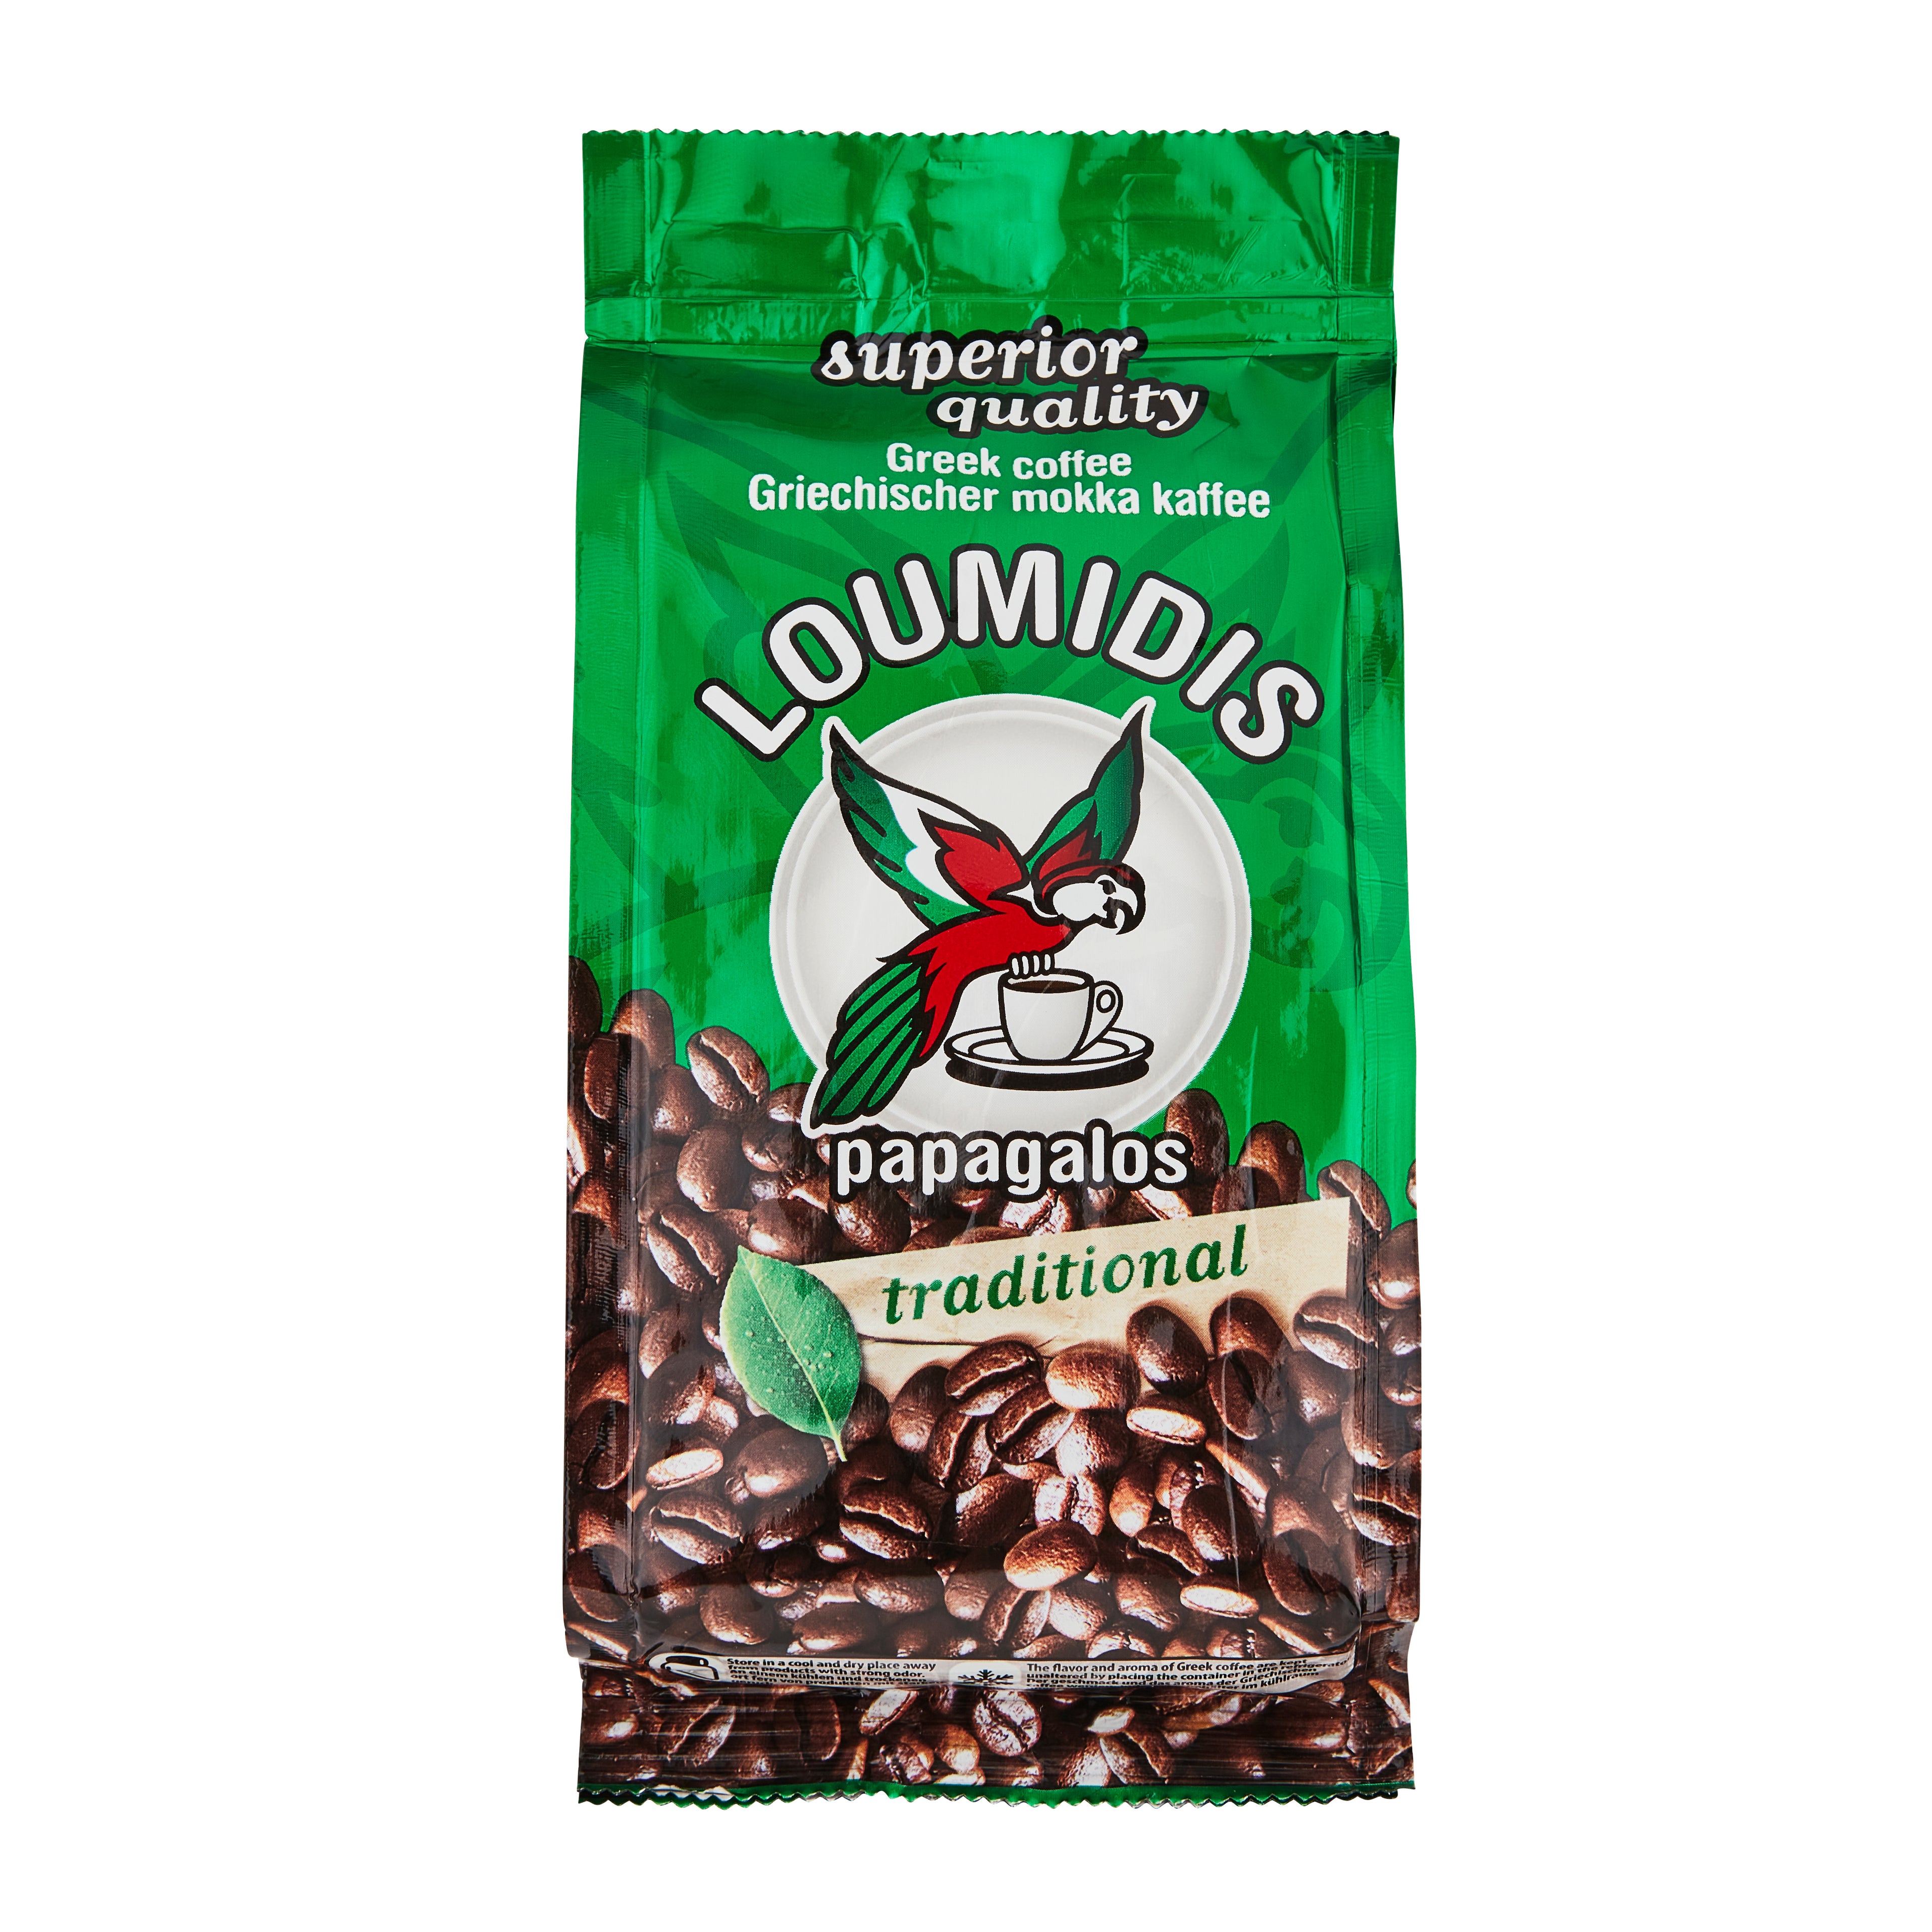 Griechischer gemahlener Kaffee Loumidis 96 g